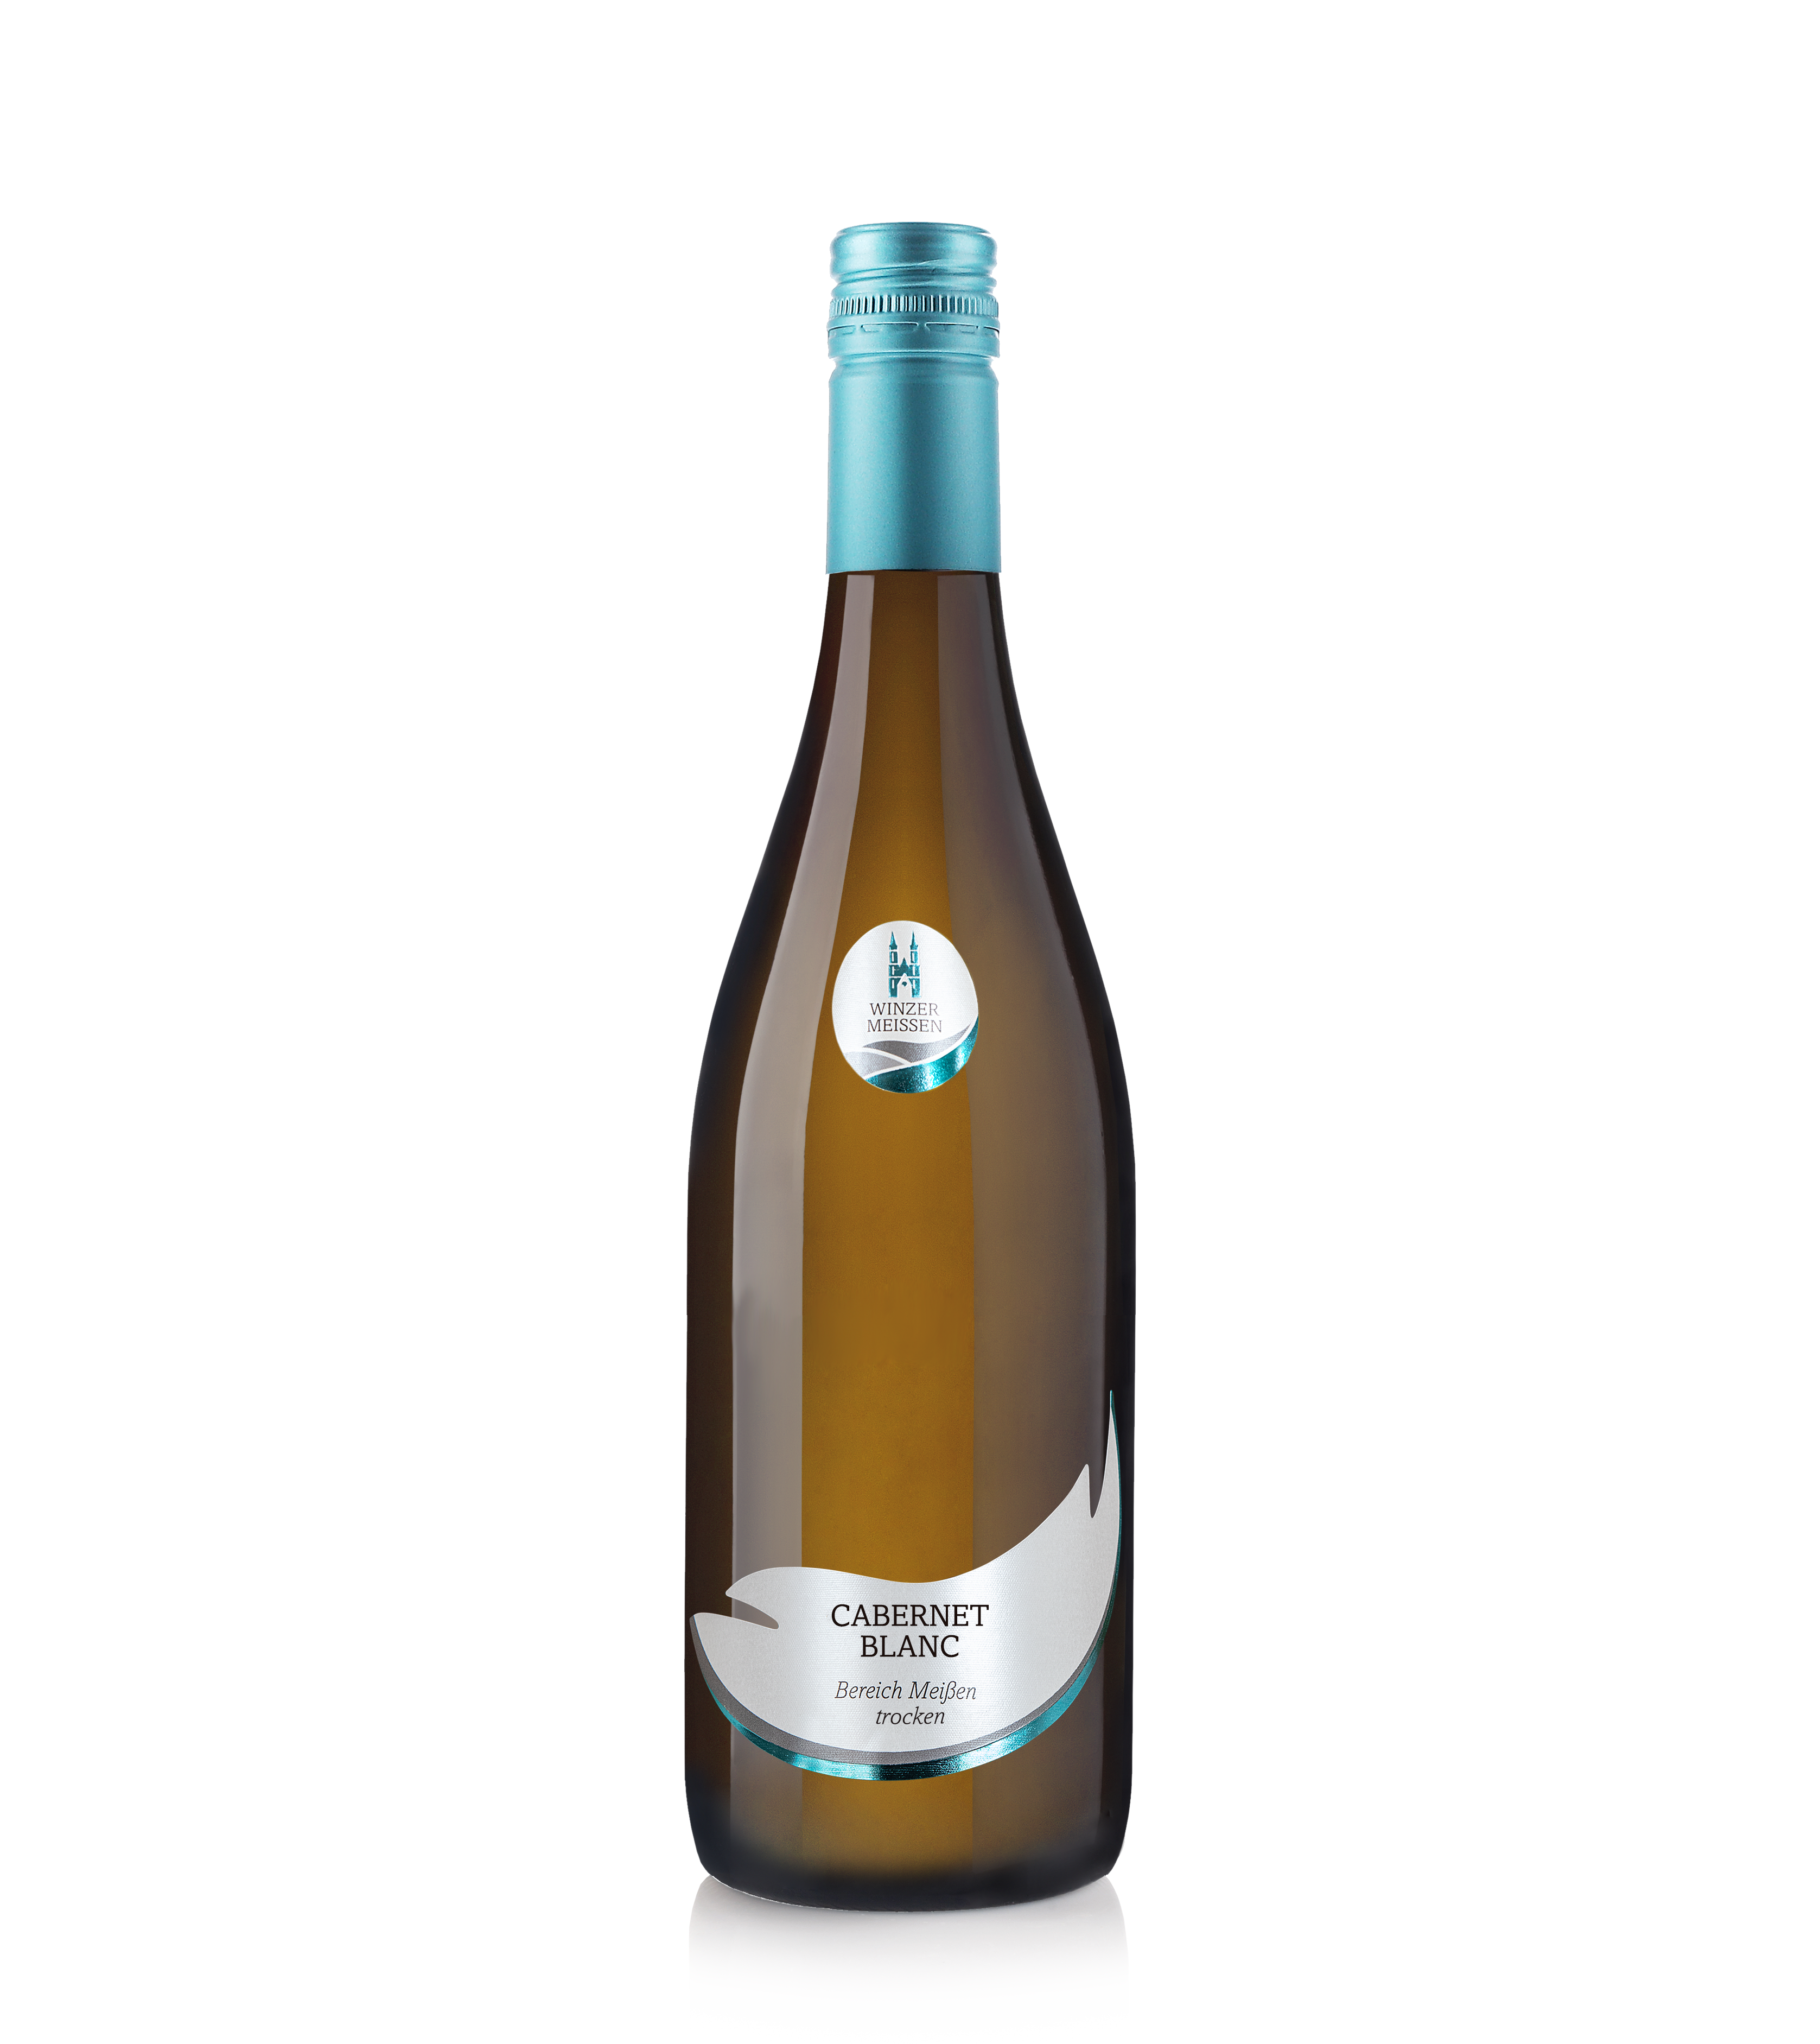 2021 Cabernet Blanc Qualitätswein Bereich Meißen trocken